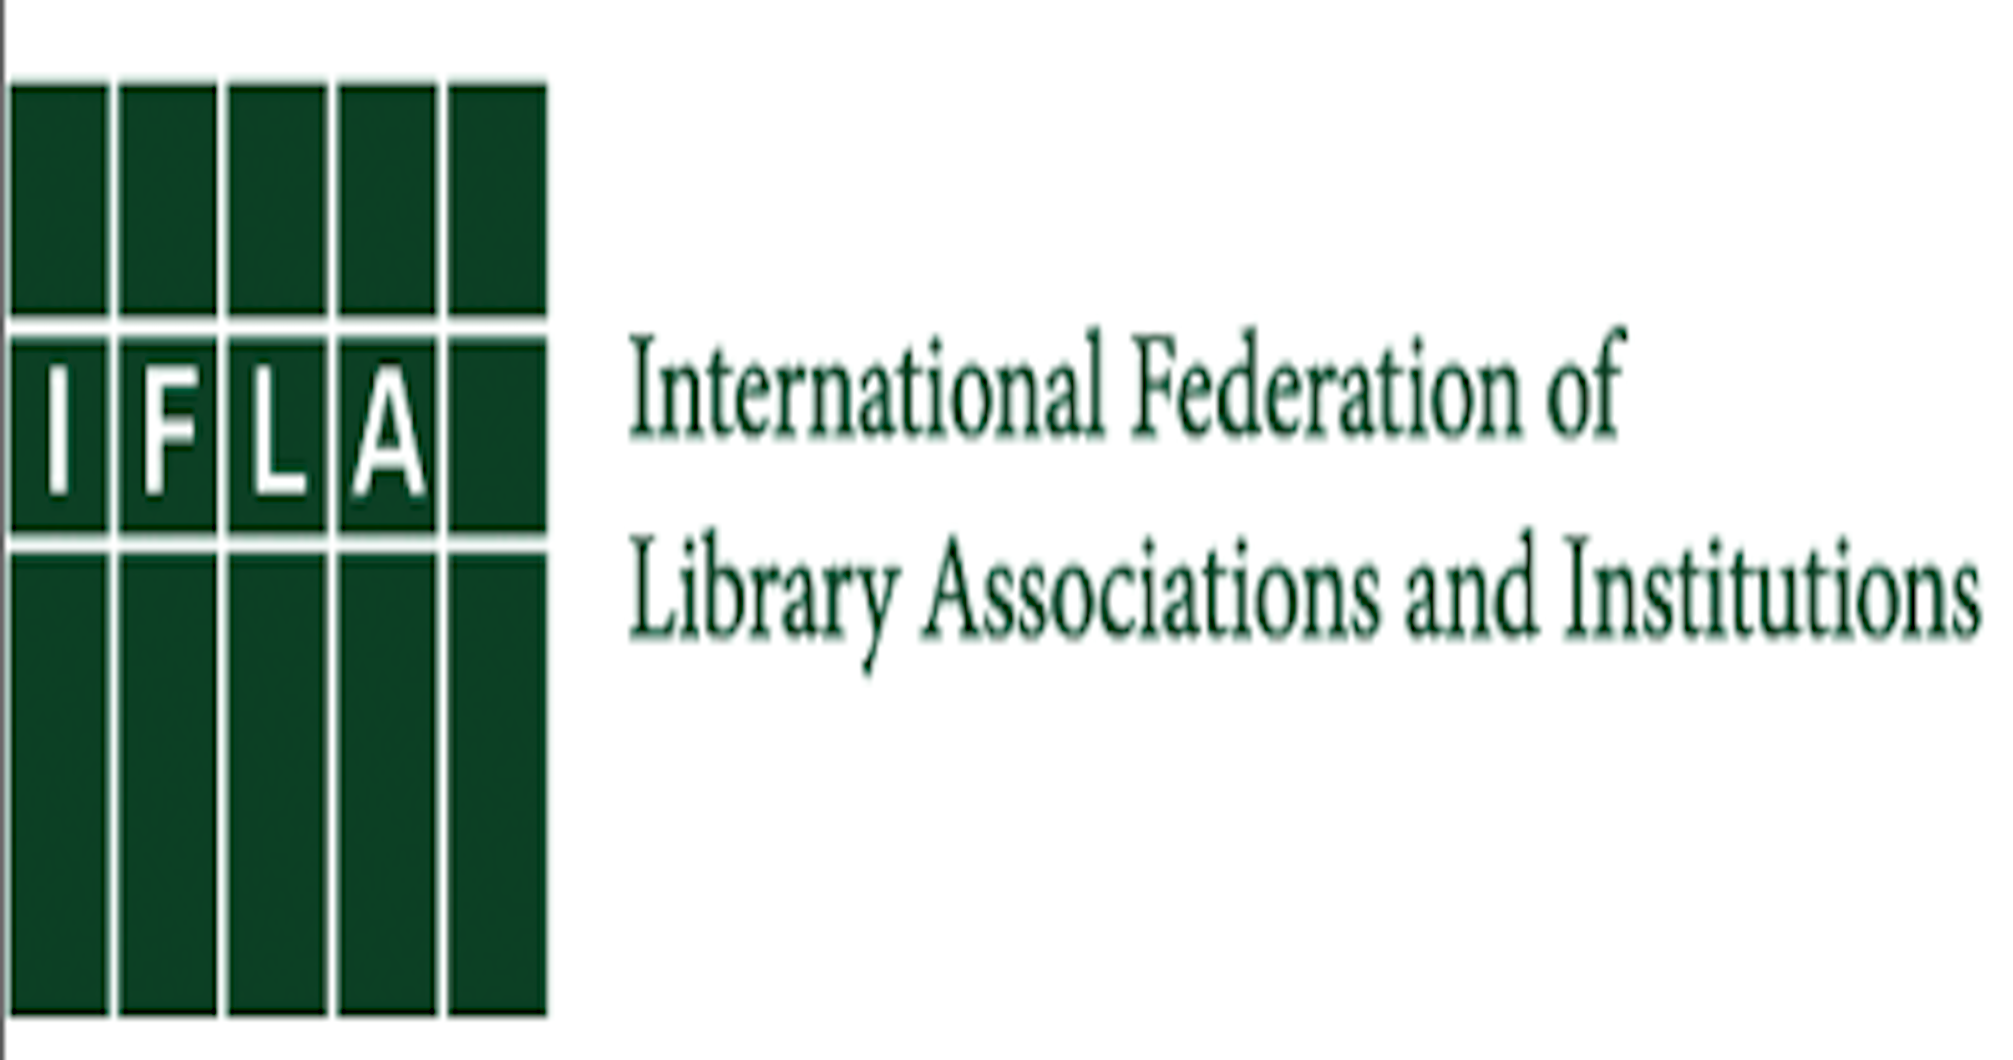 Guia IFLA (Federación Internacional de Asociaciones e instituciones bibliotecarias)